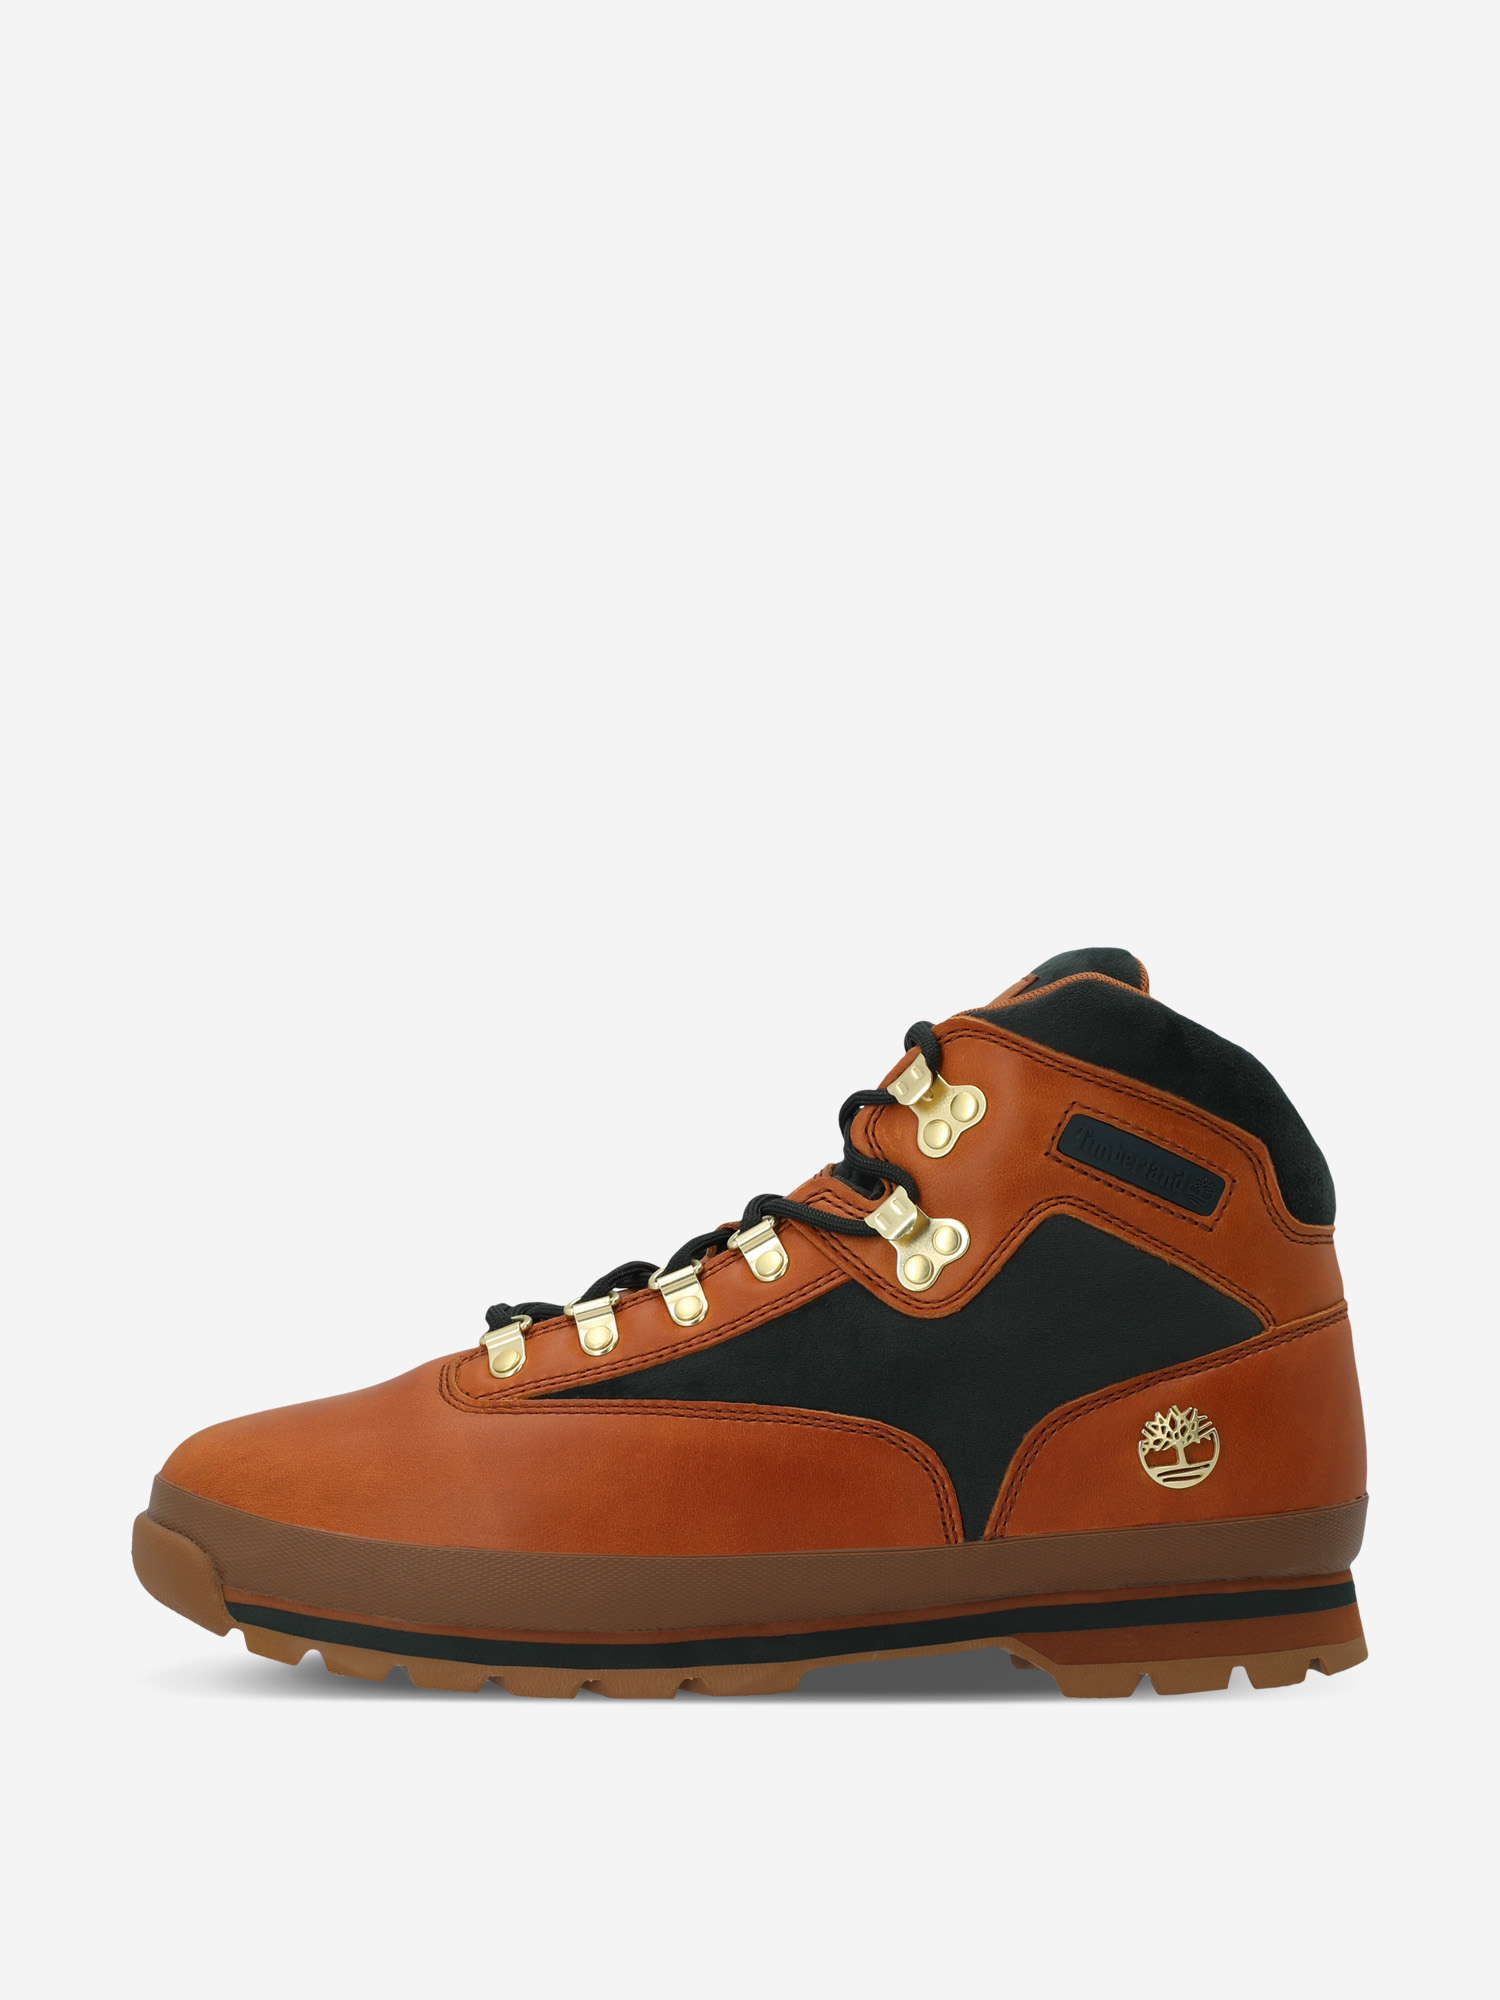 Ботинки мужские Timberland Euro Hiker, Коричневый ботинки мужские timberland euro hiker коричневый